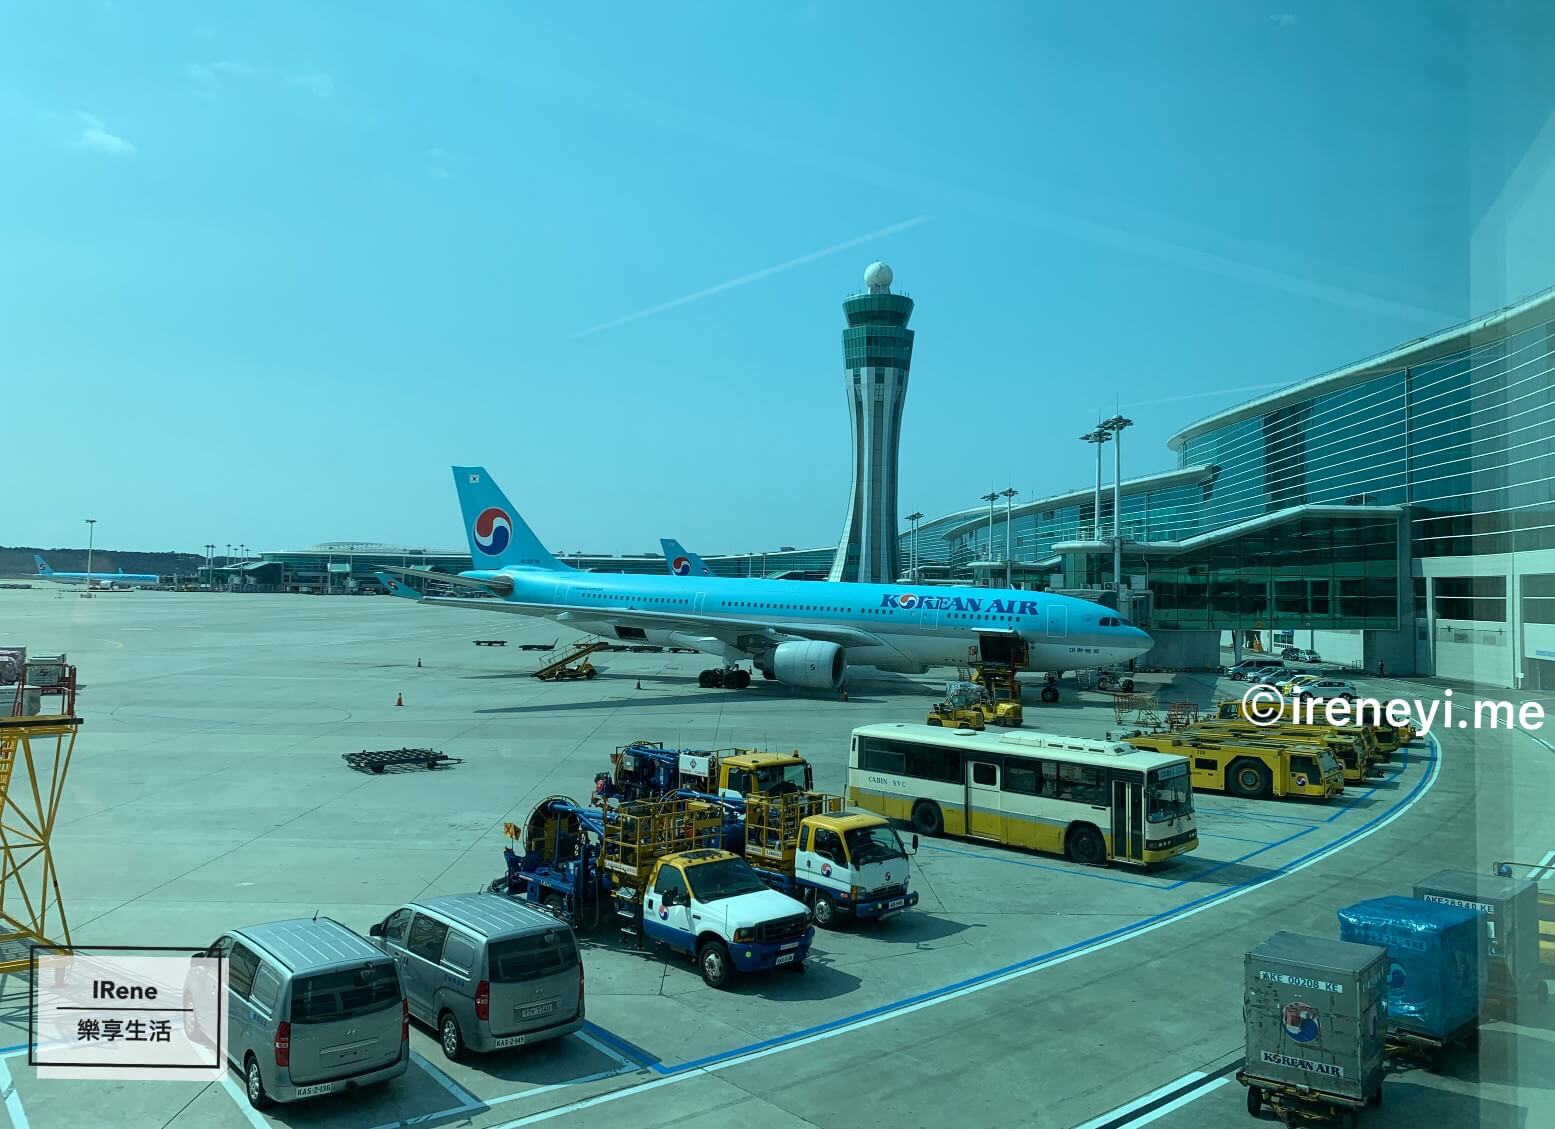 首爾仁川機場第二航廈, Seoul Incheon Airport Terminal 2, 首尔仁川机场第二航厦